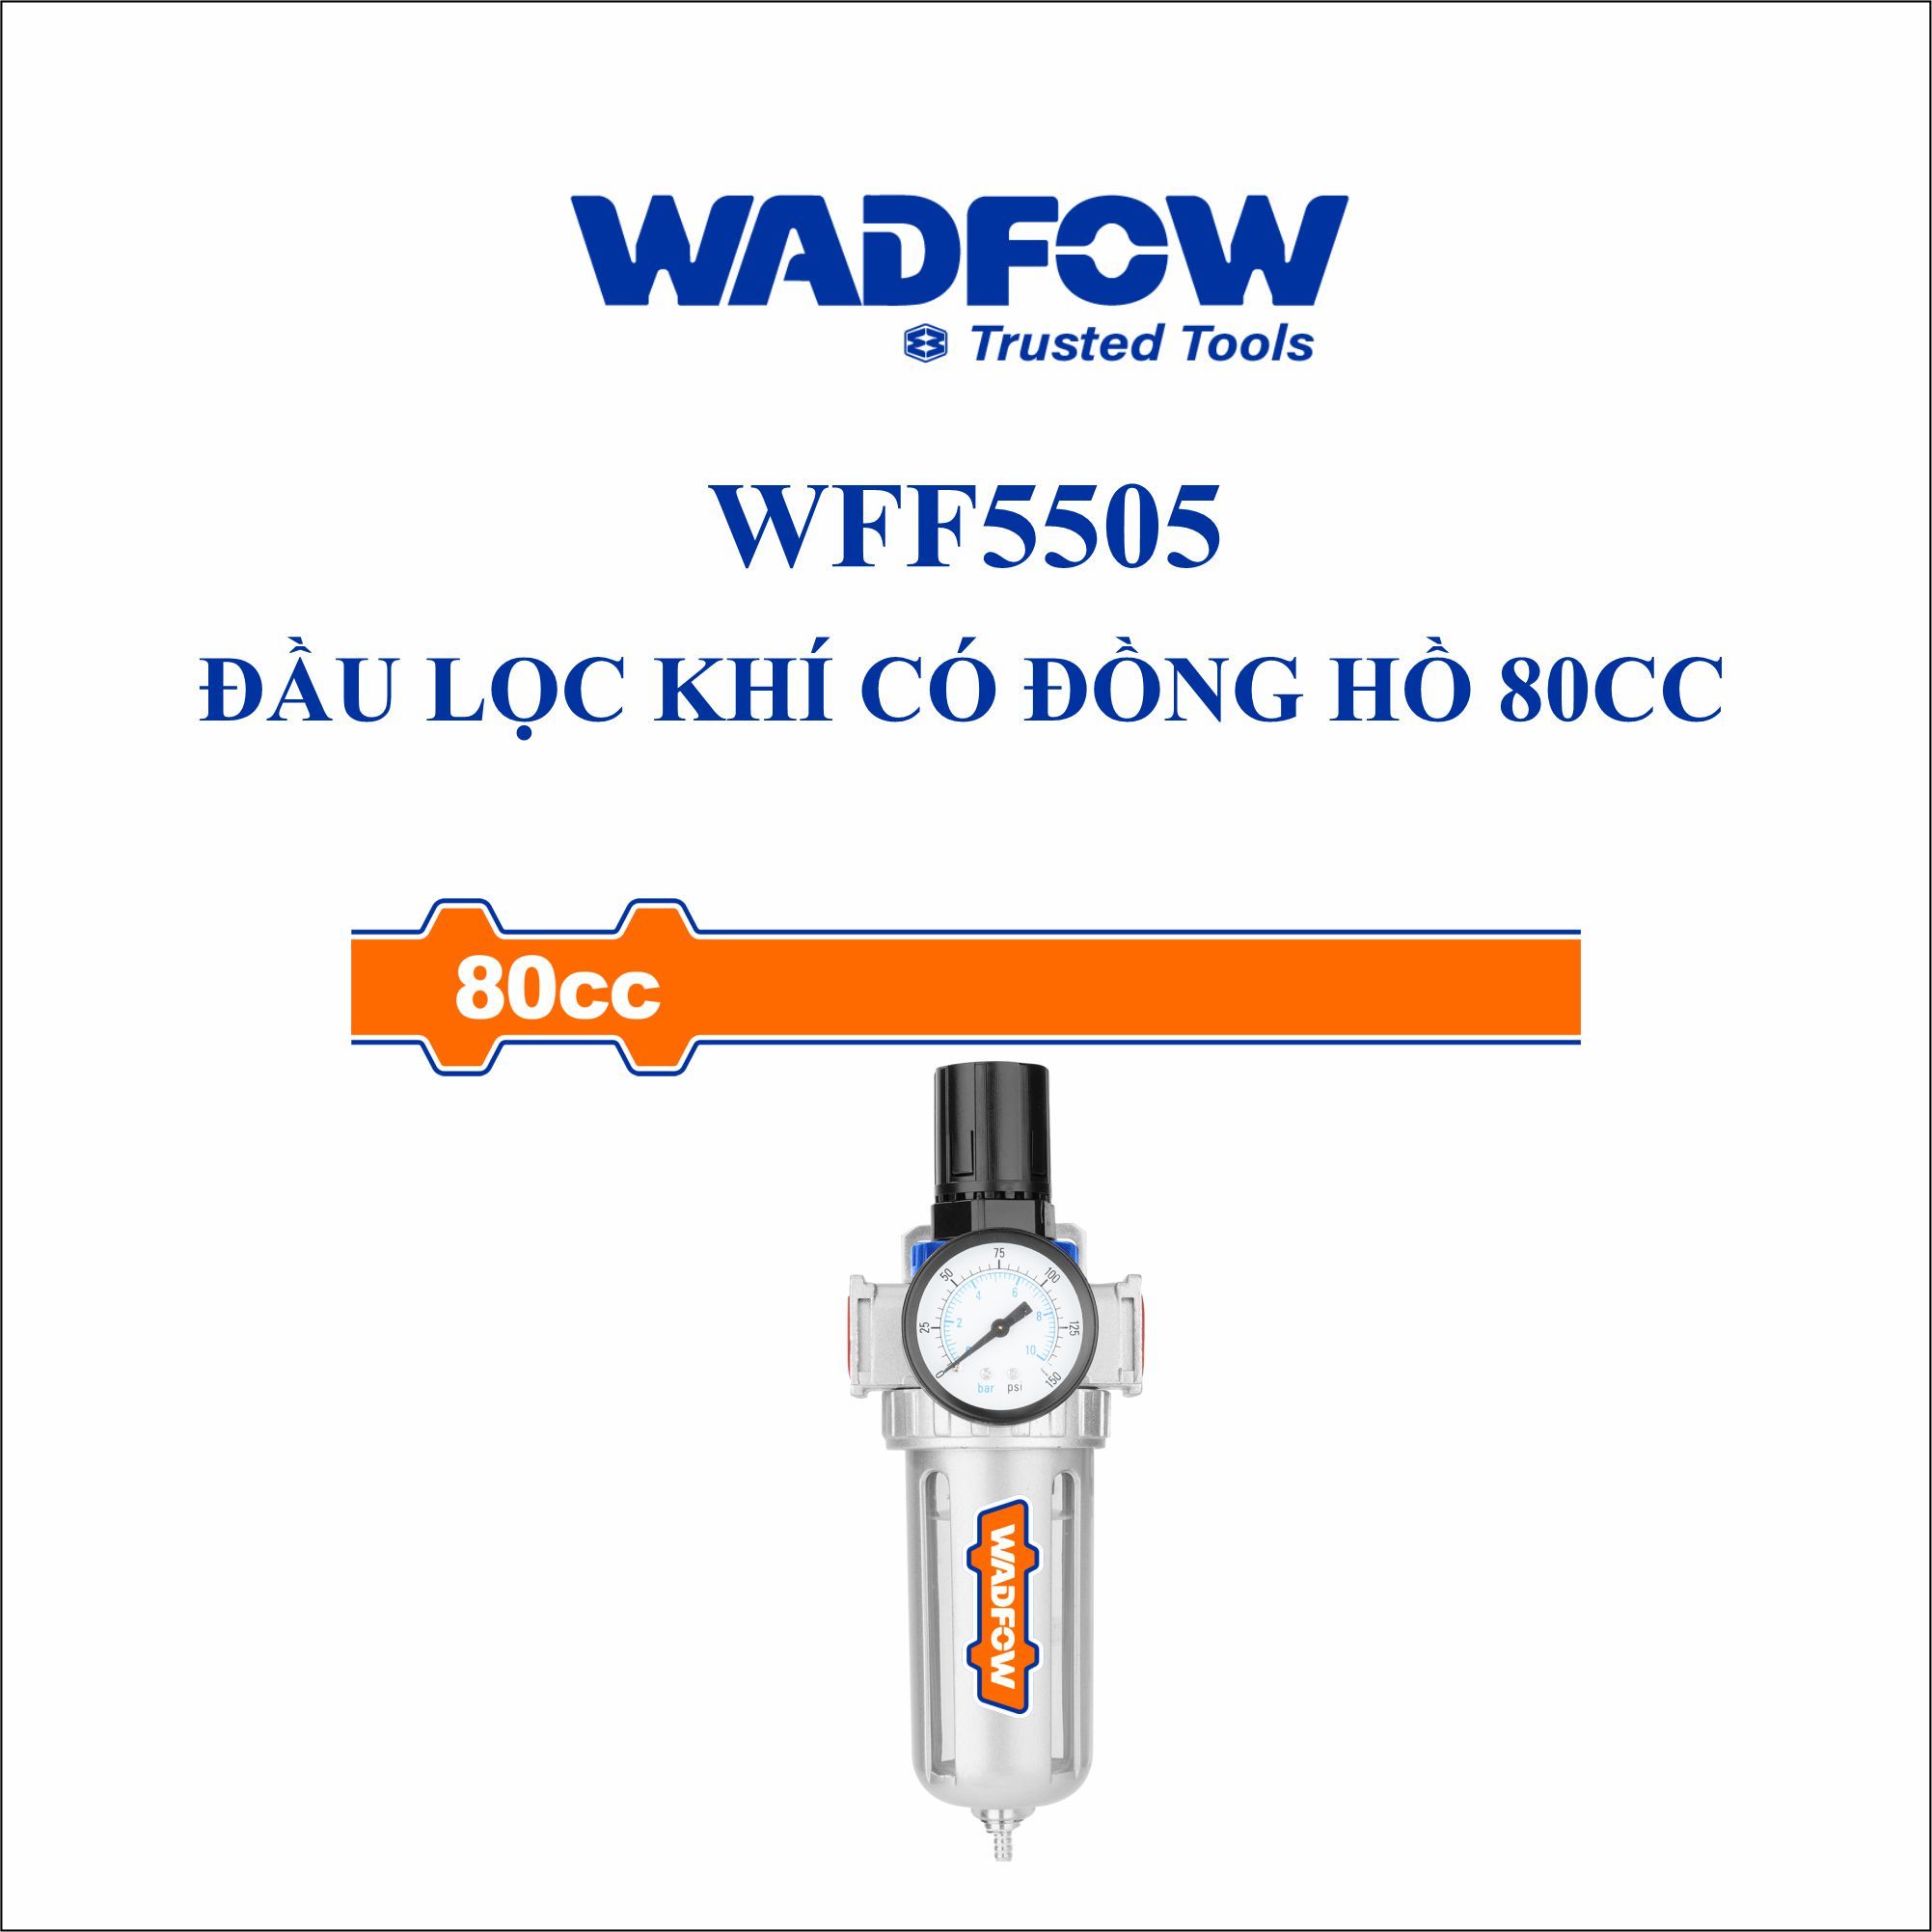  Đầu lọc khí có đồng hồ 80cc WADFOW WFF5505 